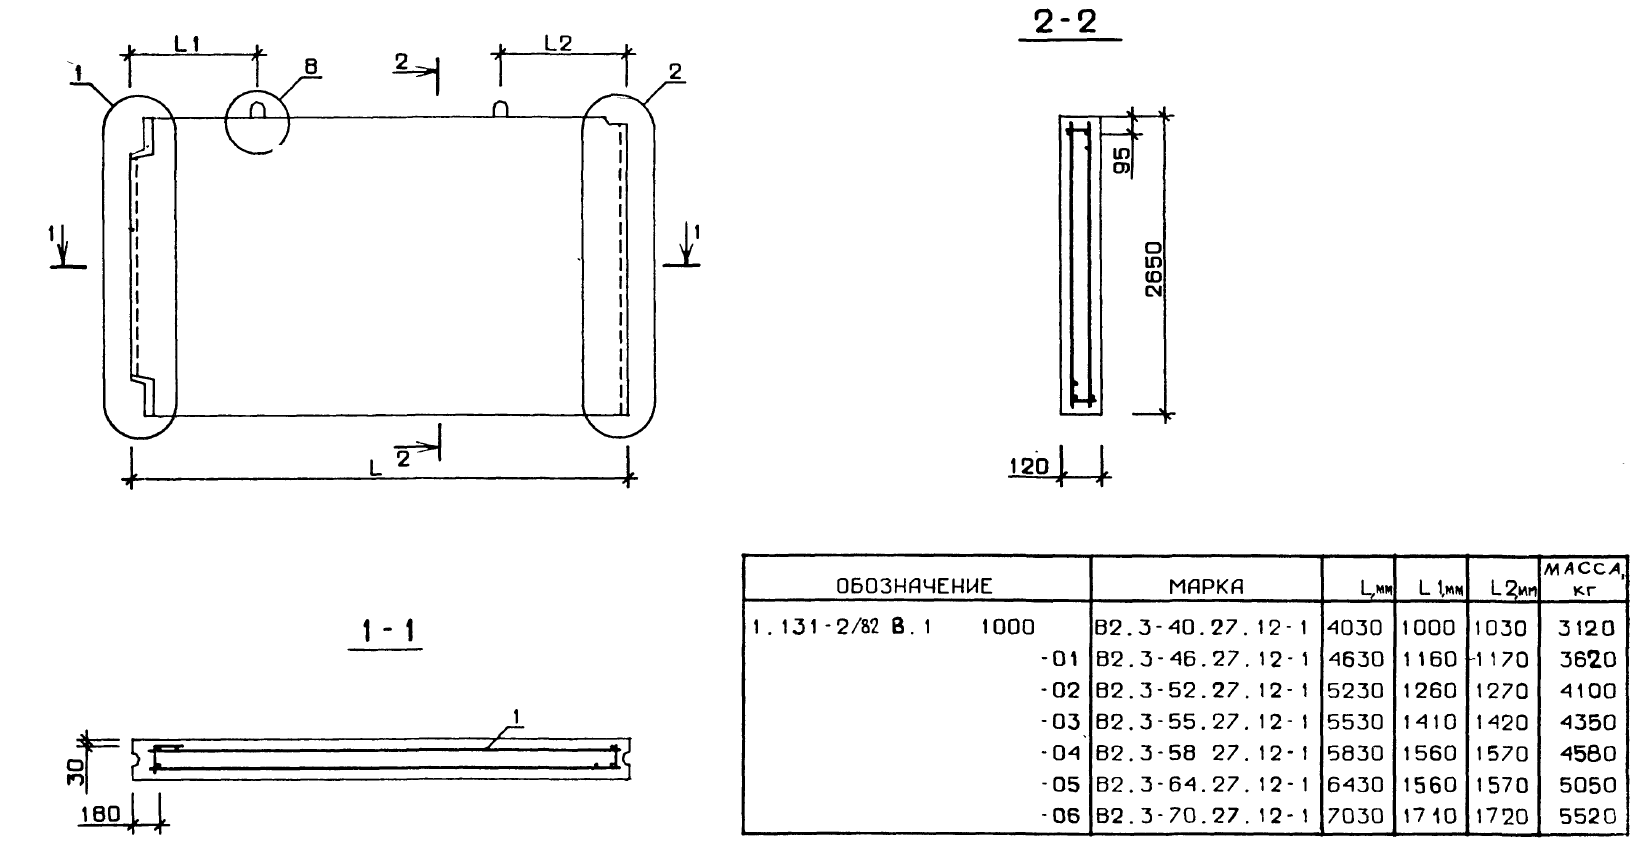 Внутренняя поперечная стеновая панель В2.3-64.27.12-1 серия 1.131-2/82